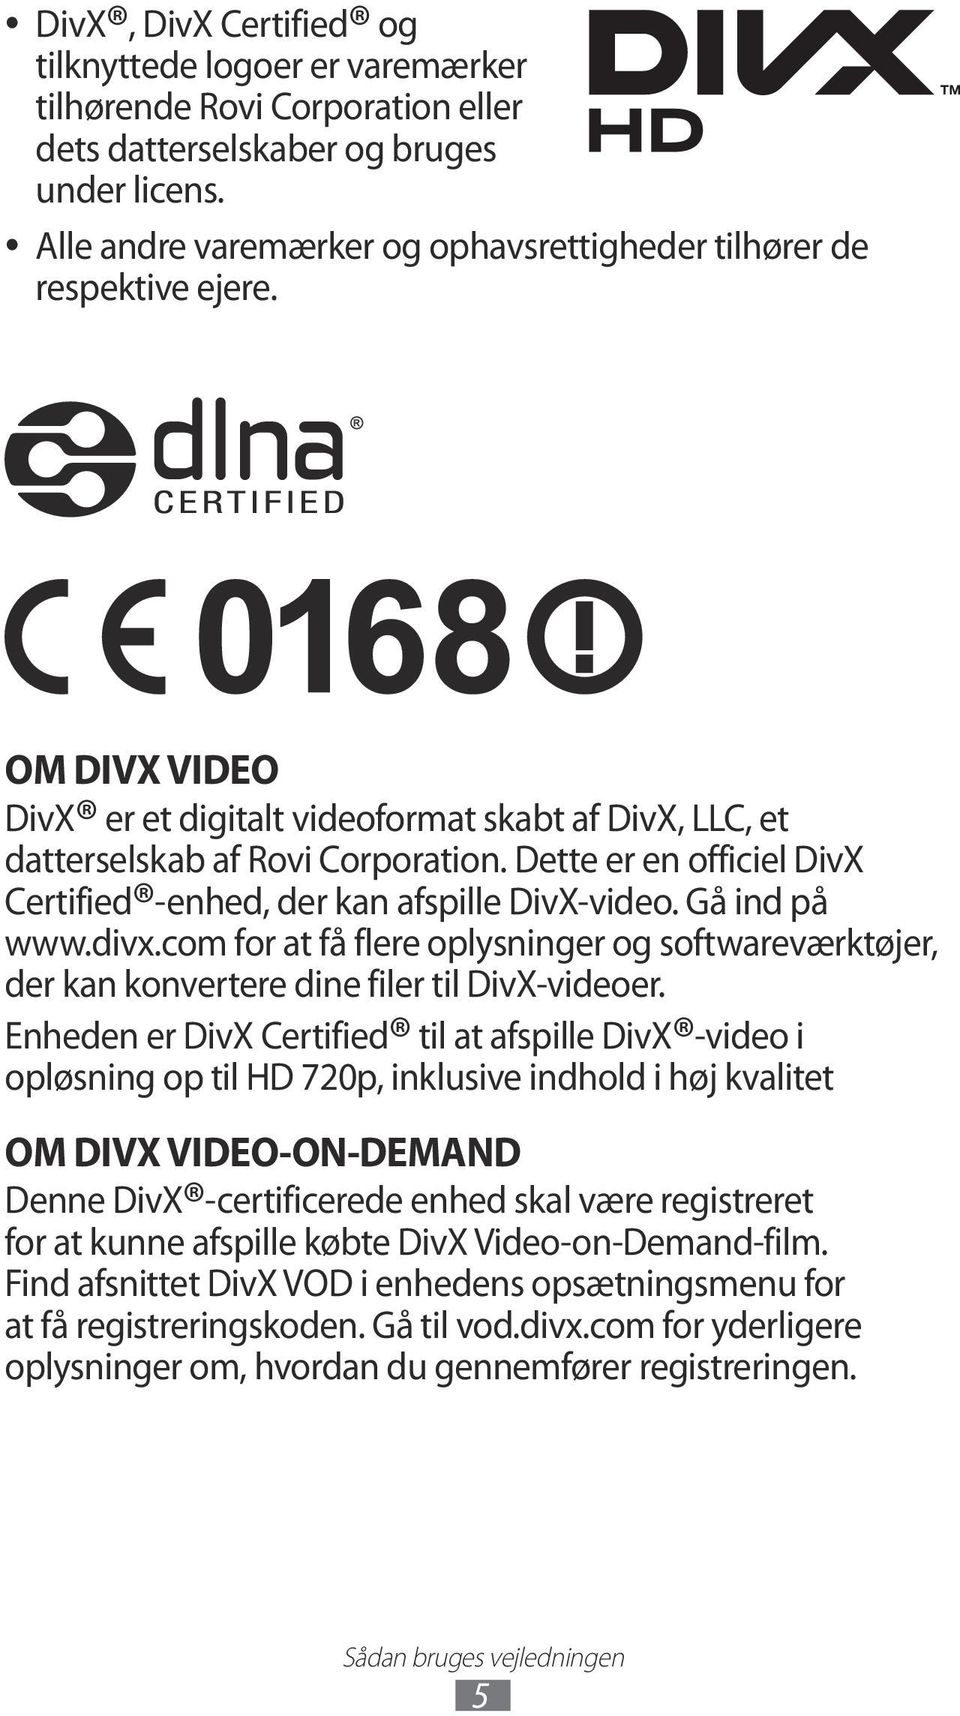 Dette er en officiel DivX Certified -enhed, der kan afspille DivX-video. Gå ind på www.divx.com for at få flere oplysninger og softwareværktøjer, der kan konvertere dine filer til DivX-videoer.